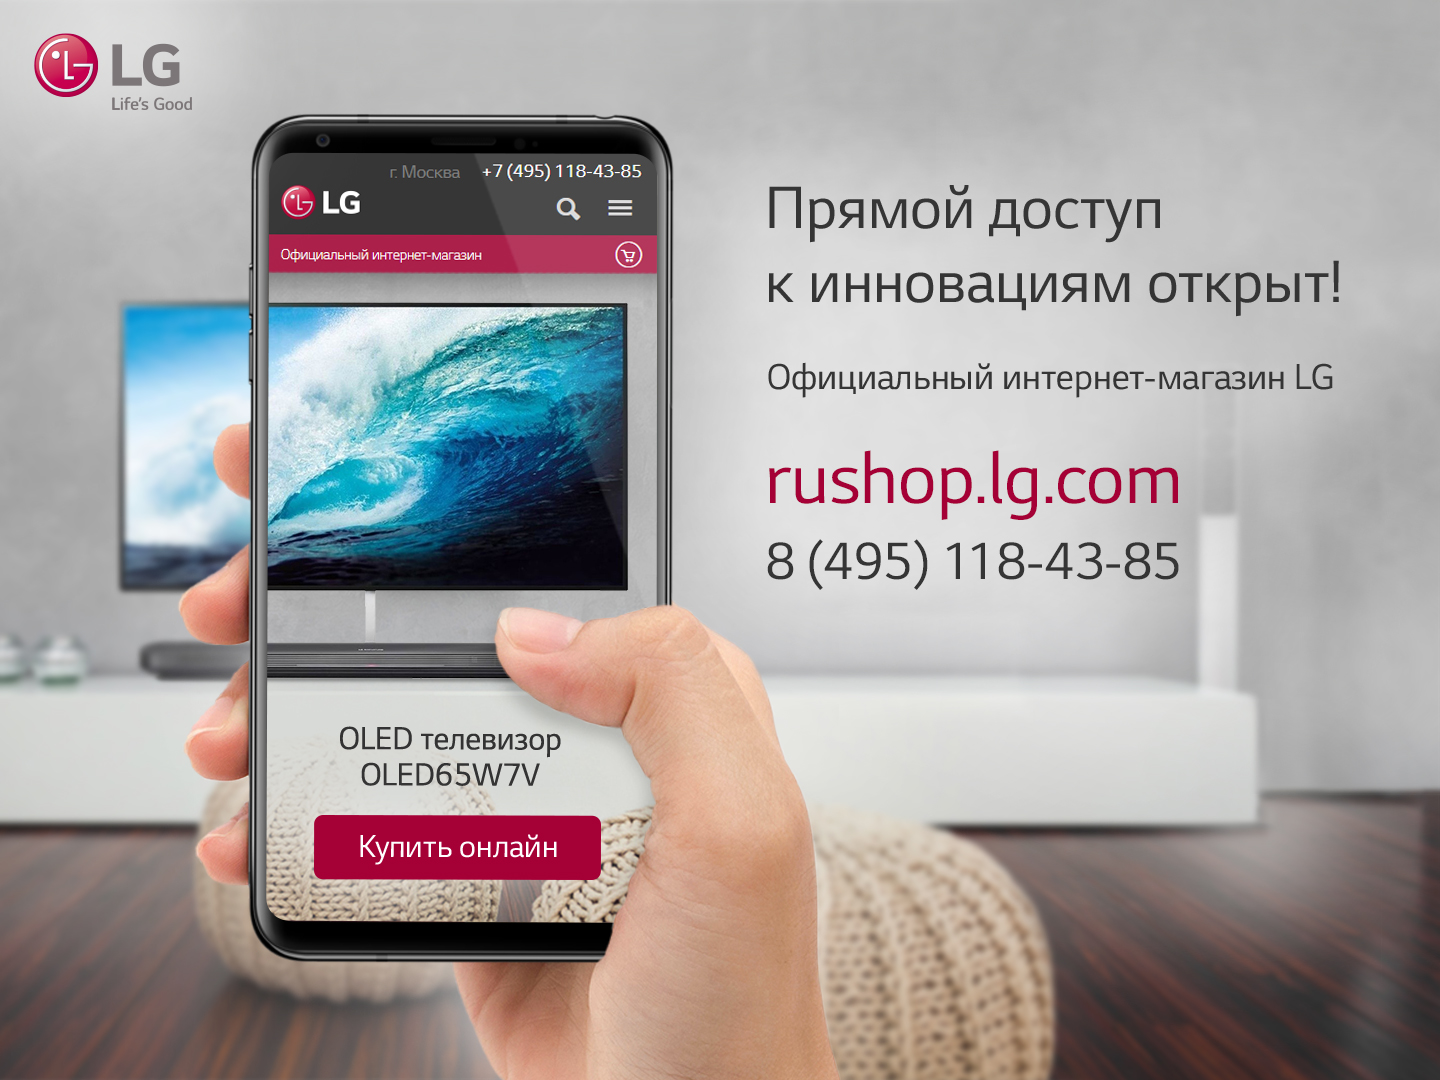 Прямой доступ к инновациям открыт: LG Electronics (LG) запускает в России свой официальный онлайн-магазин  - фото 1